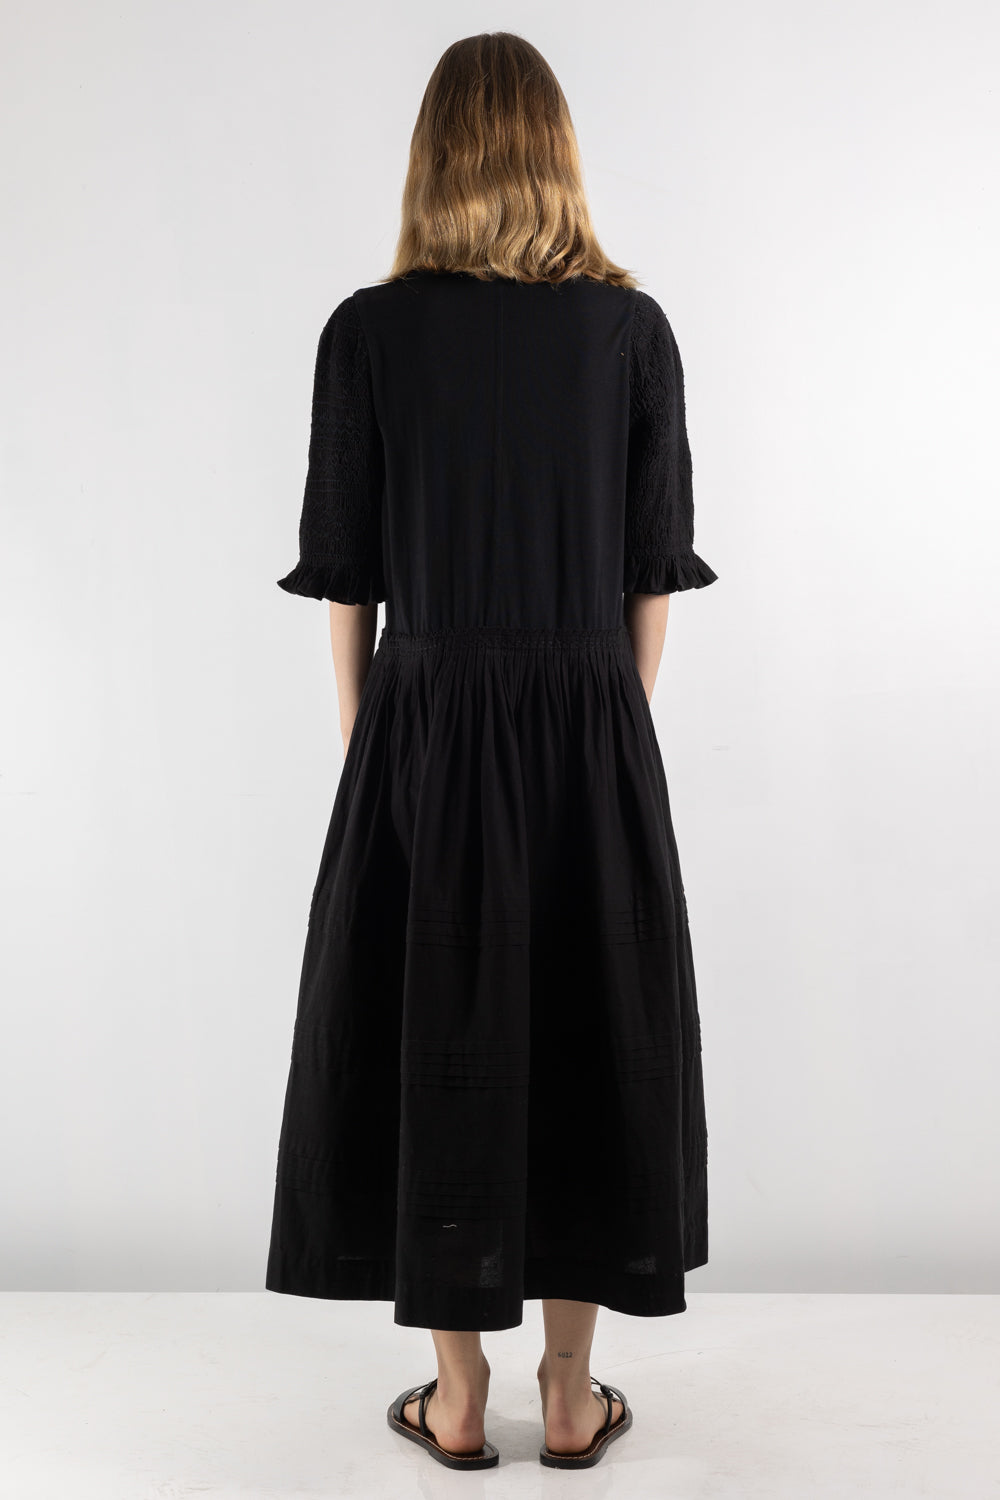 Womens Dress | Seas Willa Dress | The Standard Store